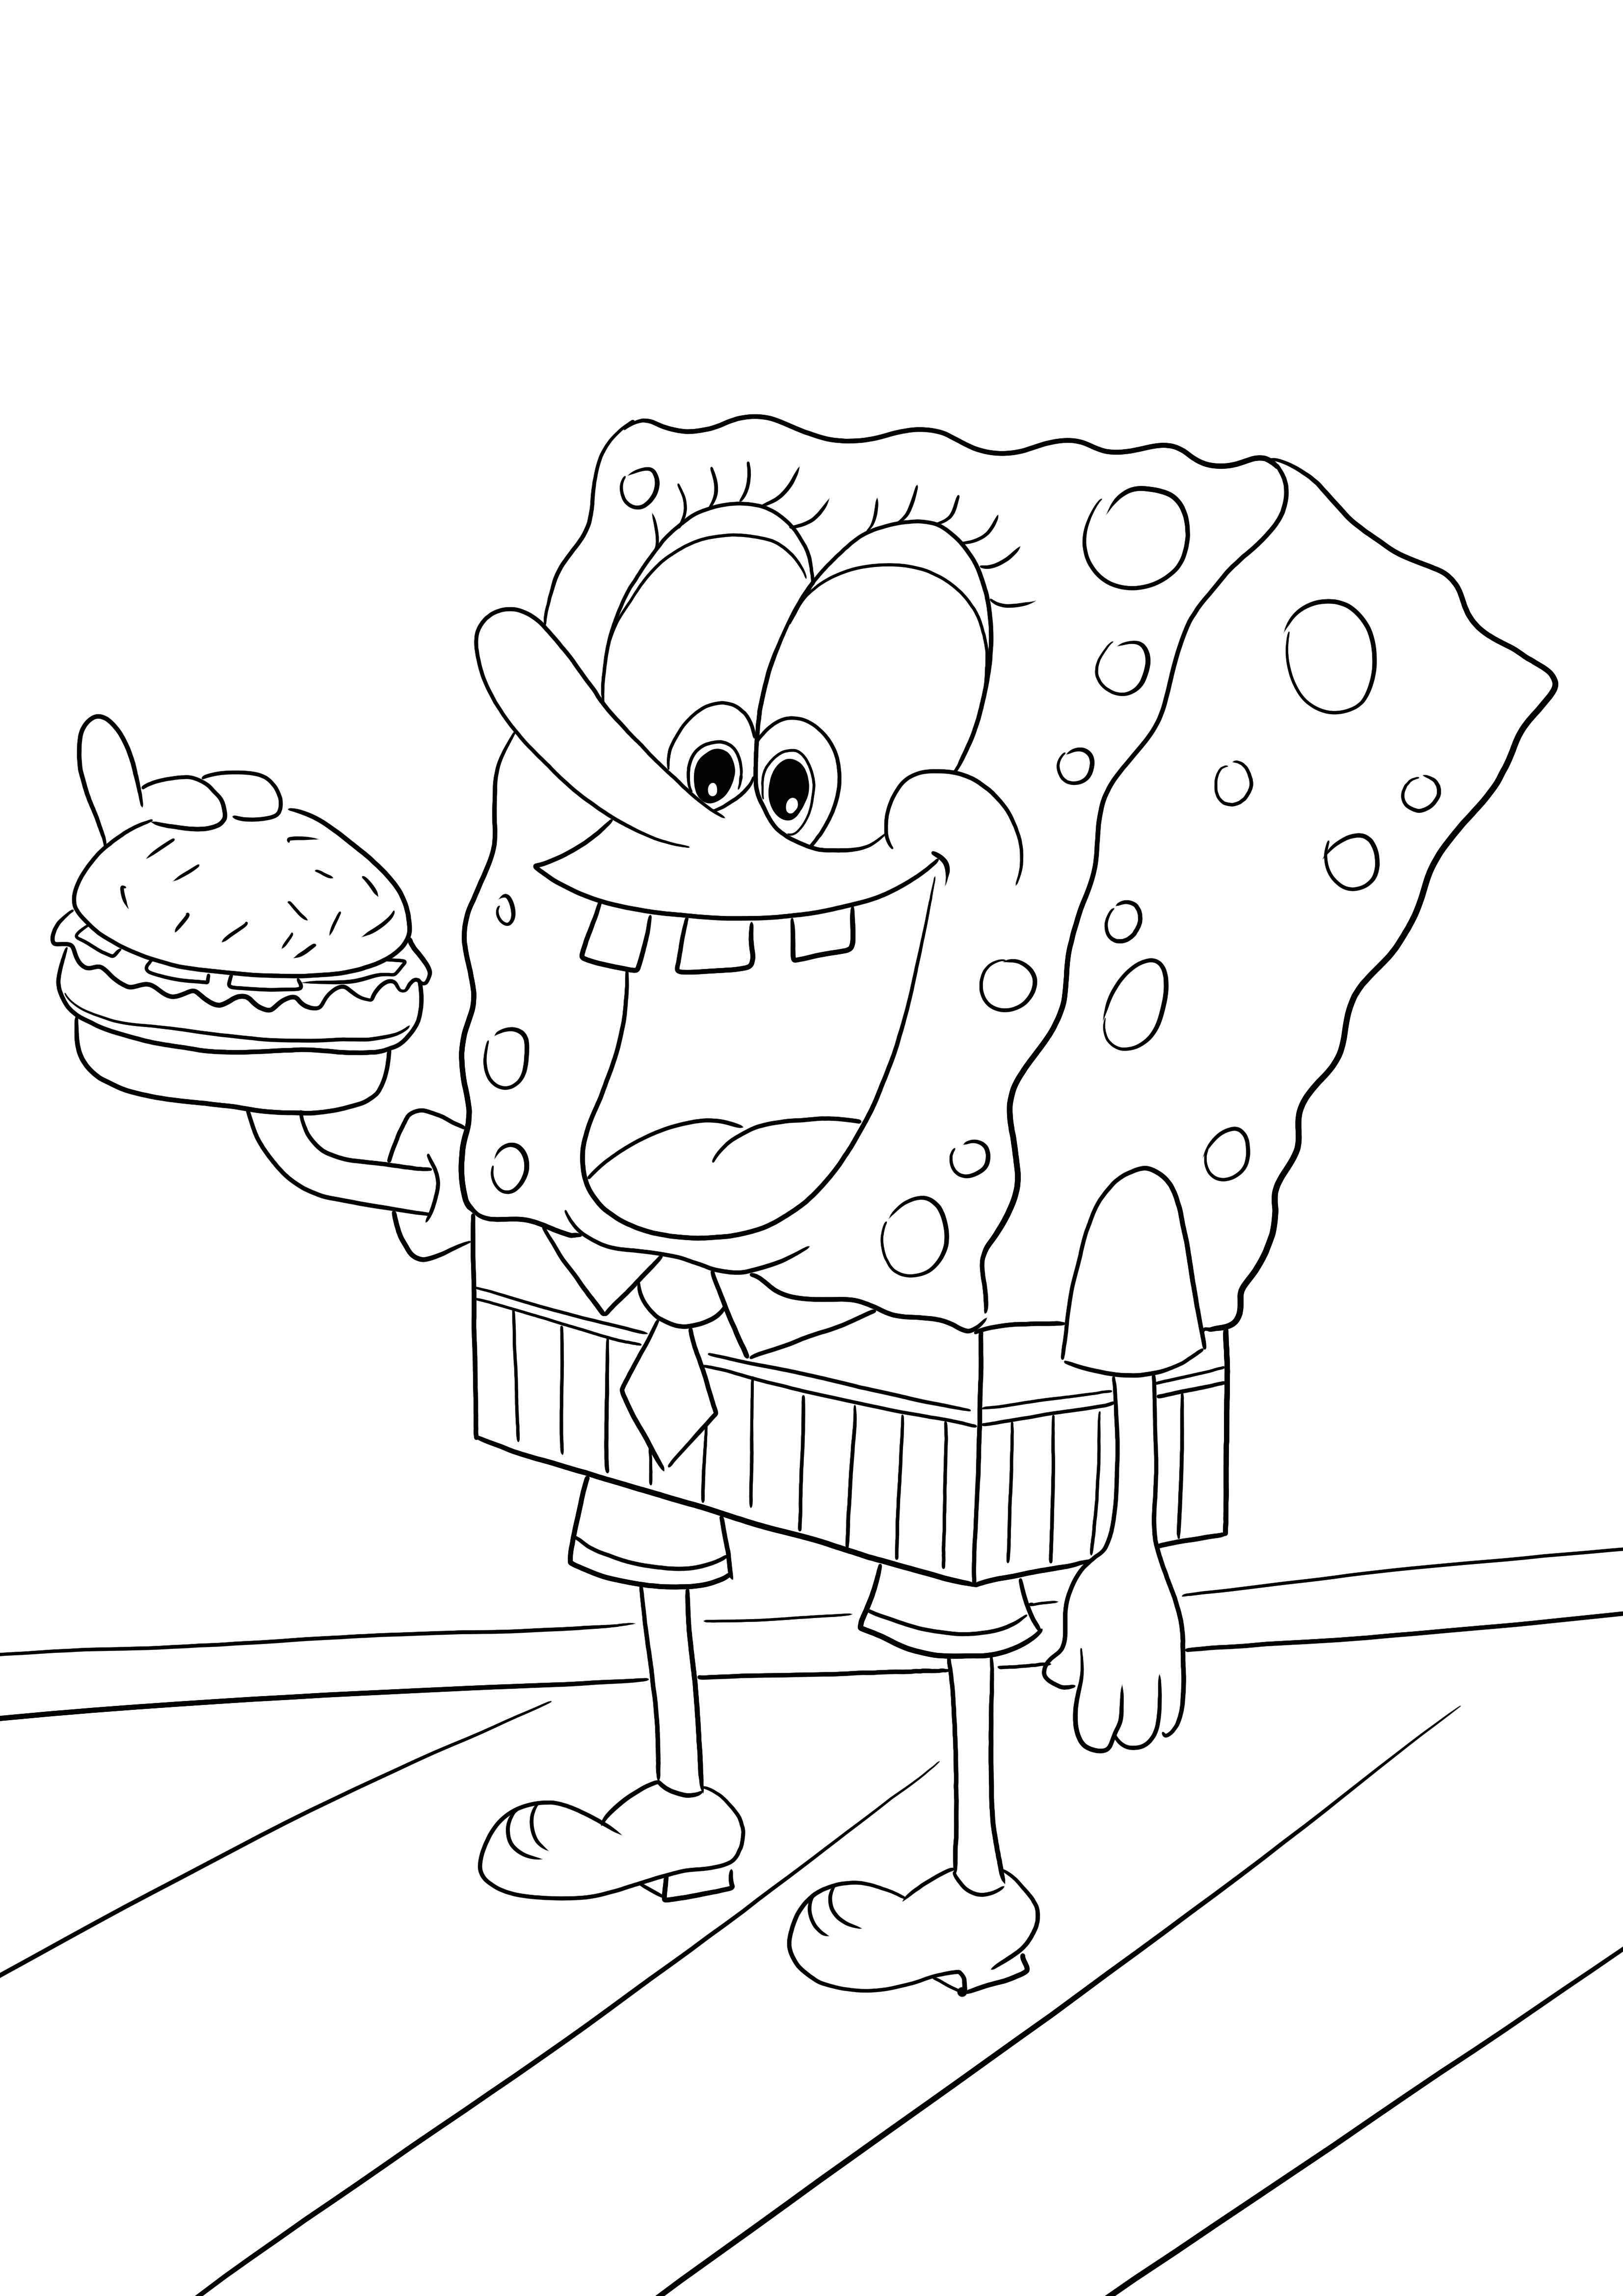 Sponge Bob jedzący hamburgera do pobrania i pokolorowania za darmową stronę